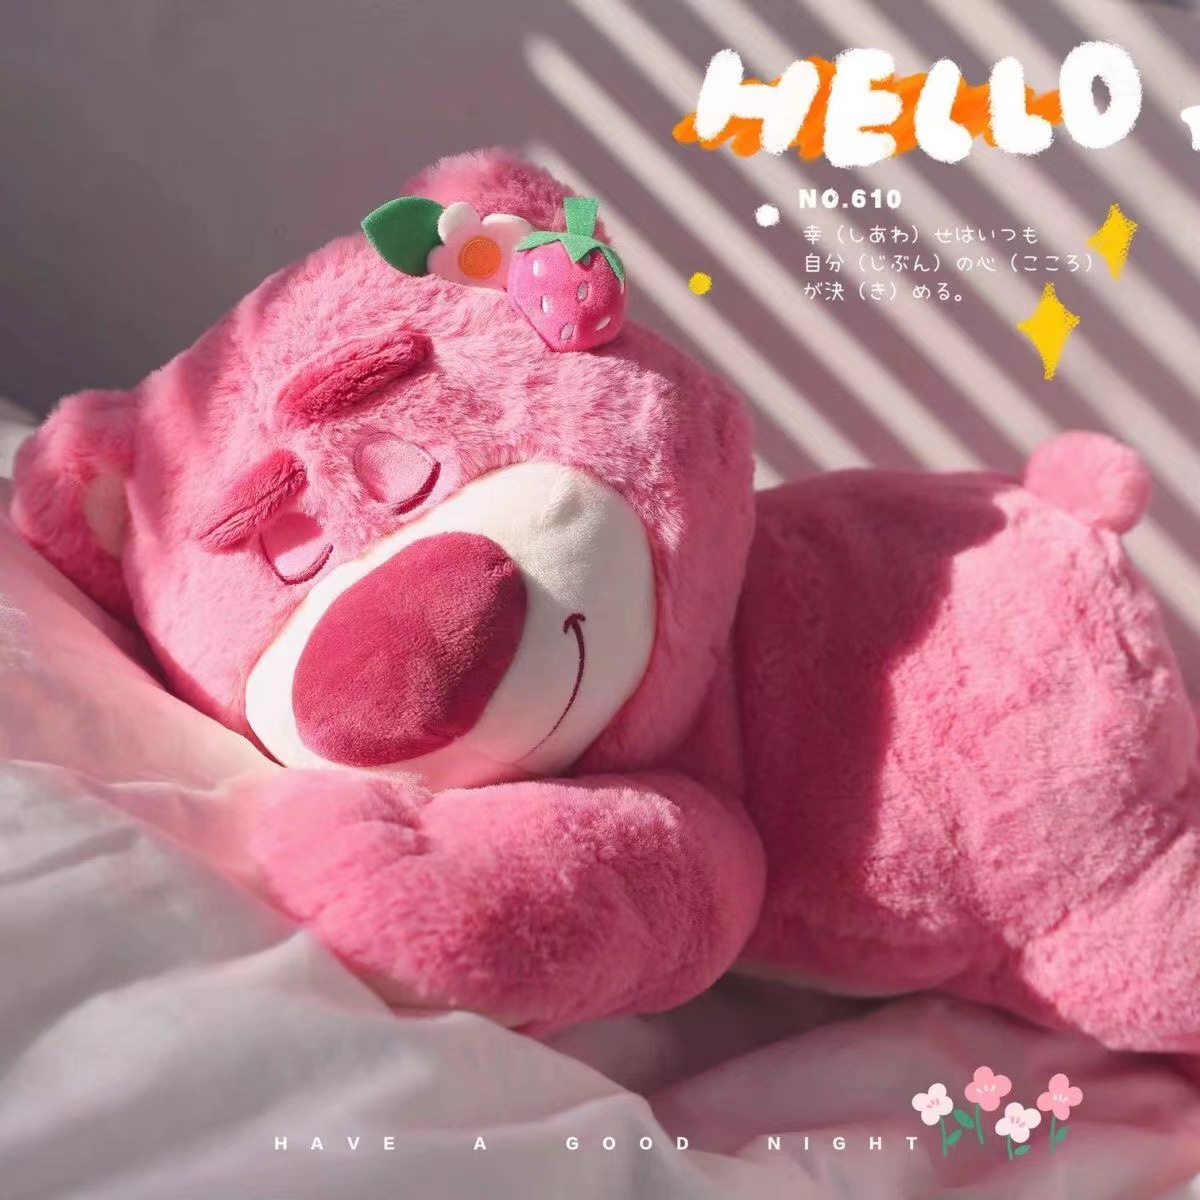 Khám phá hình nền gấu bông Lotso ngọt ngào này! Hình ảnh của chú gấu ăn vị dâu tây cũng sẽ mang lại cho bạn sự ngọt ngào và yêu thương. Trang trí cho màn hình điện thoại của bạn với hình ảnh này để tạo ra một không gian vui vẻ và đáng yêu tràn ngập niềm hạnh phúc.